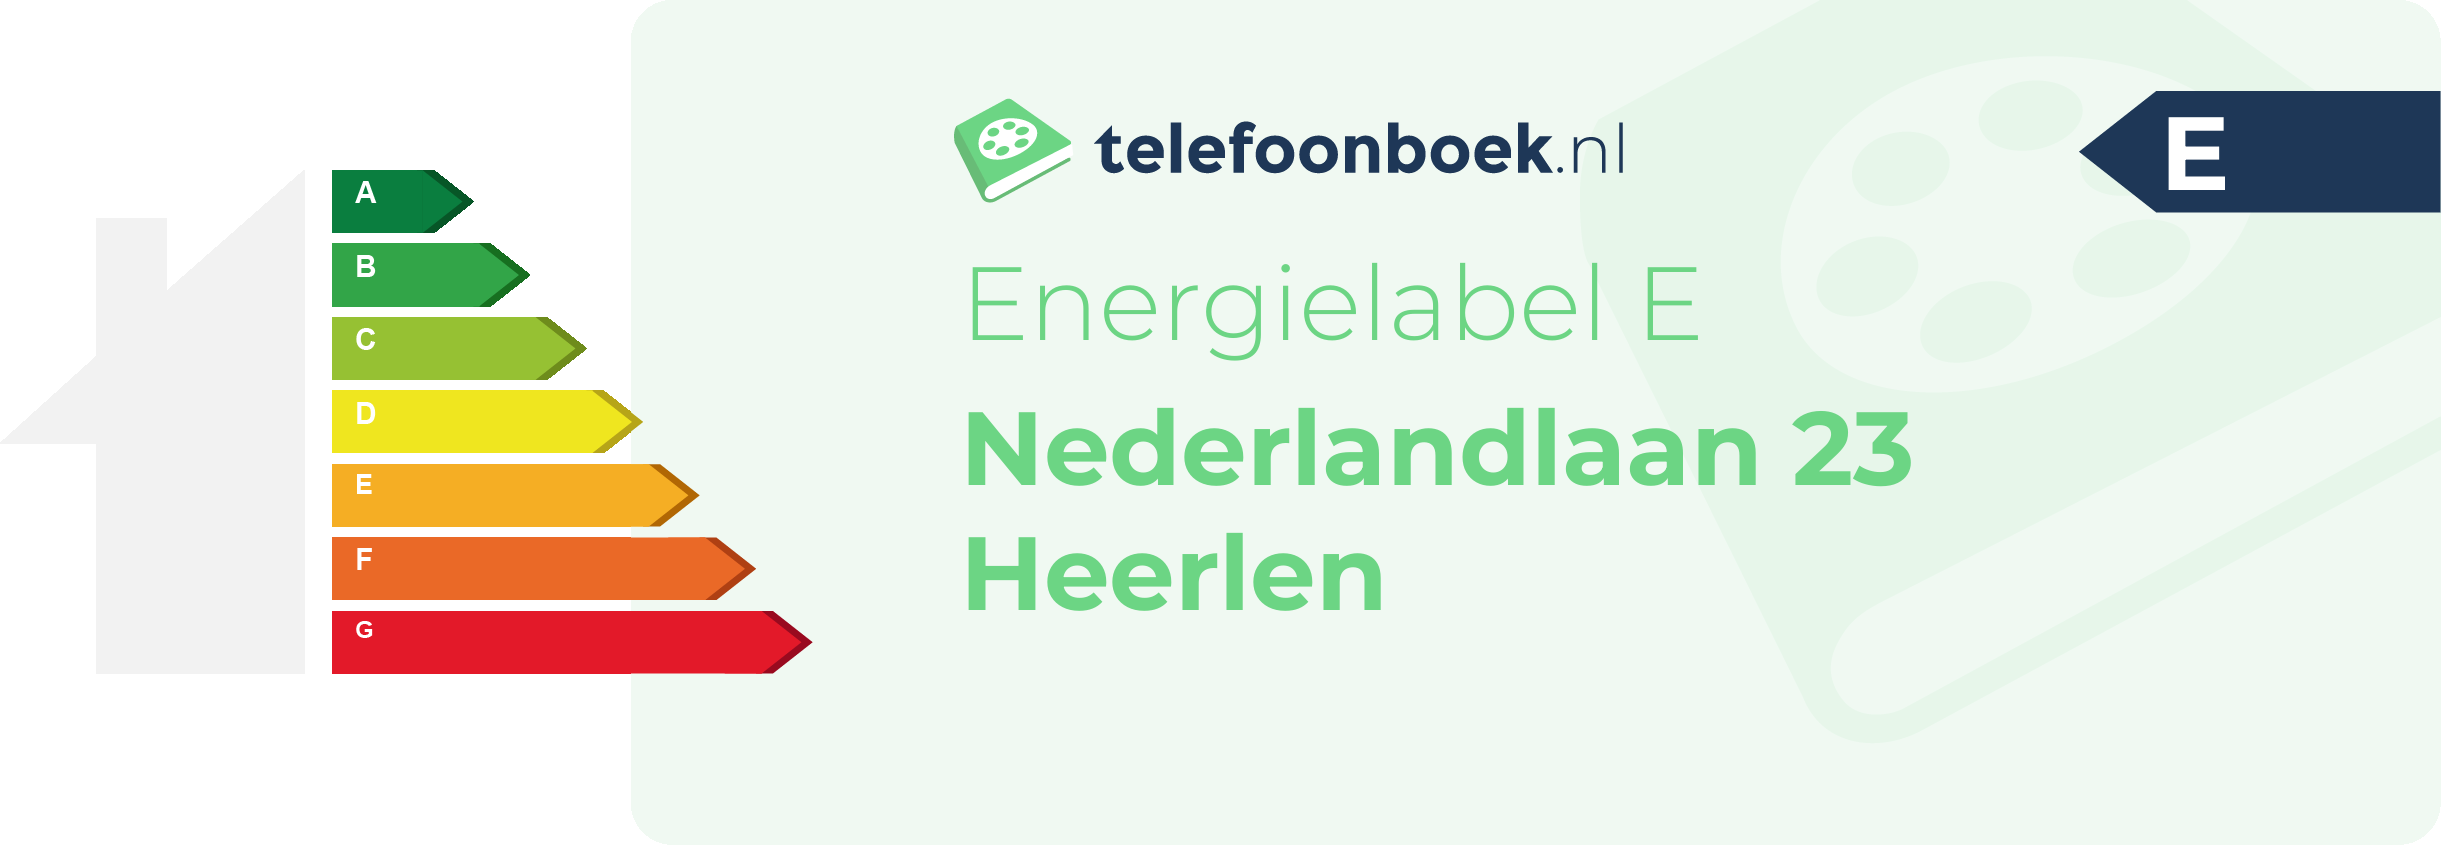 Energielabel Nederlandlaan 23 Heerlen